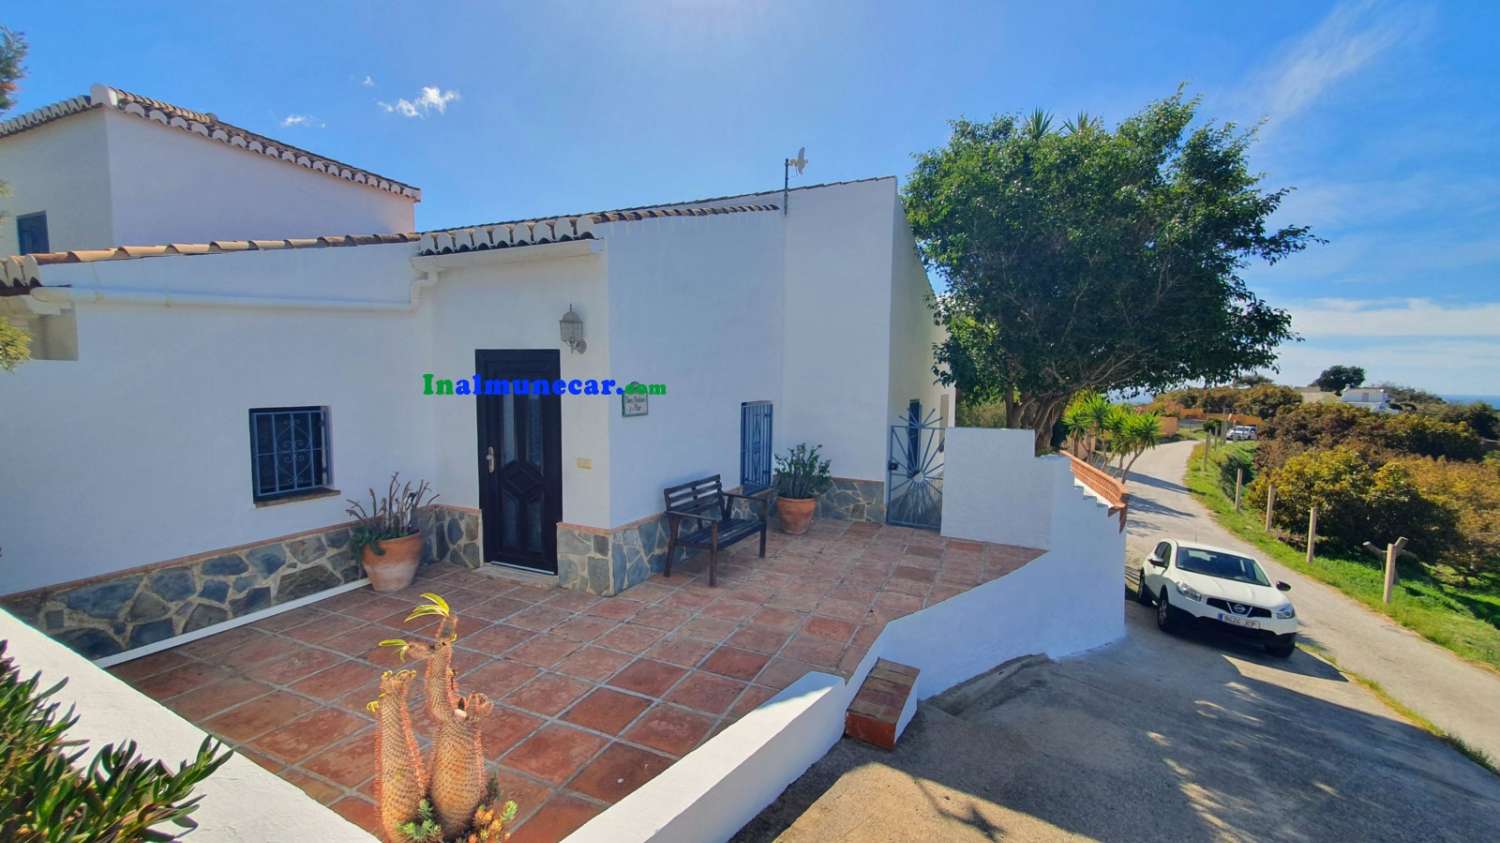 Landhaus zum Verkauf in der Bucht von La Herradura, Andalusien.